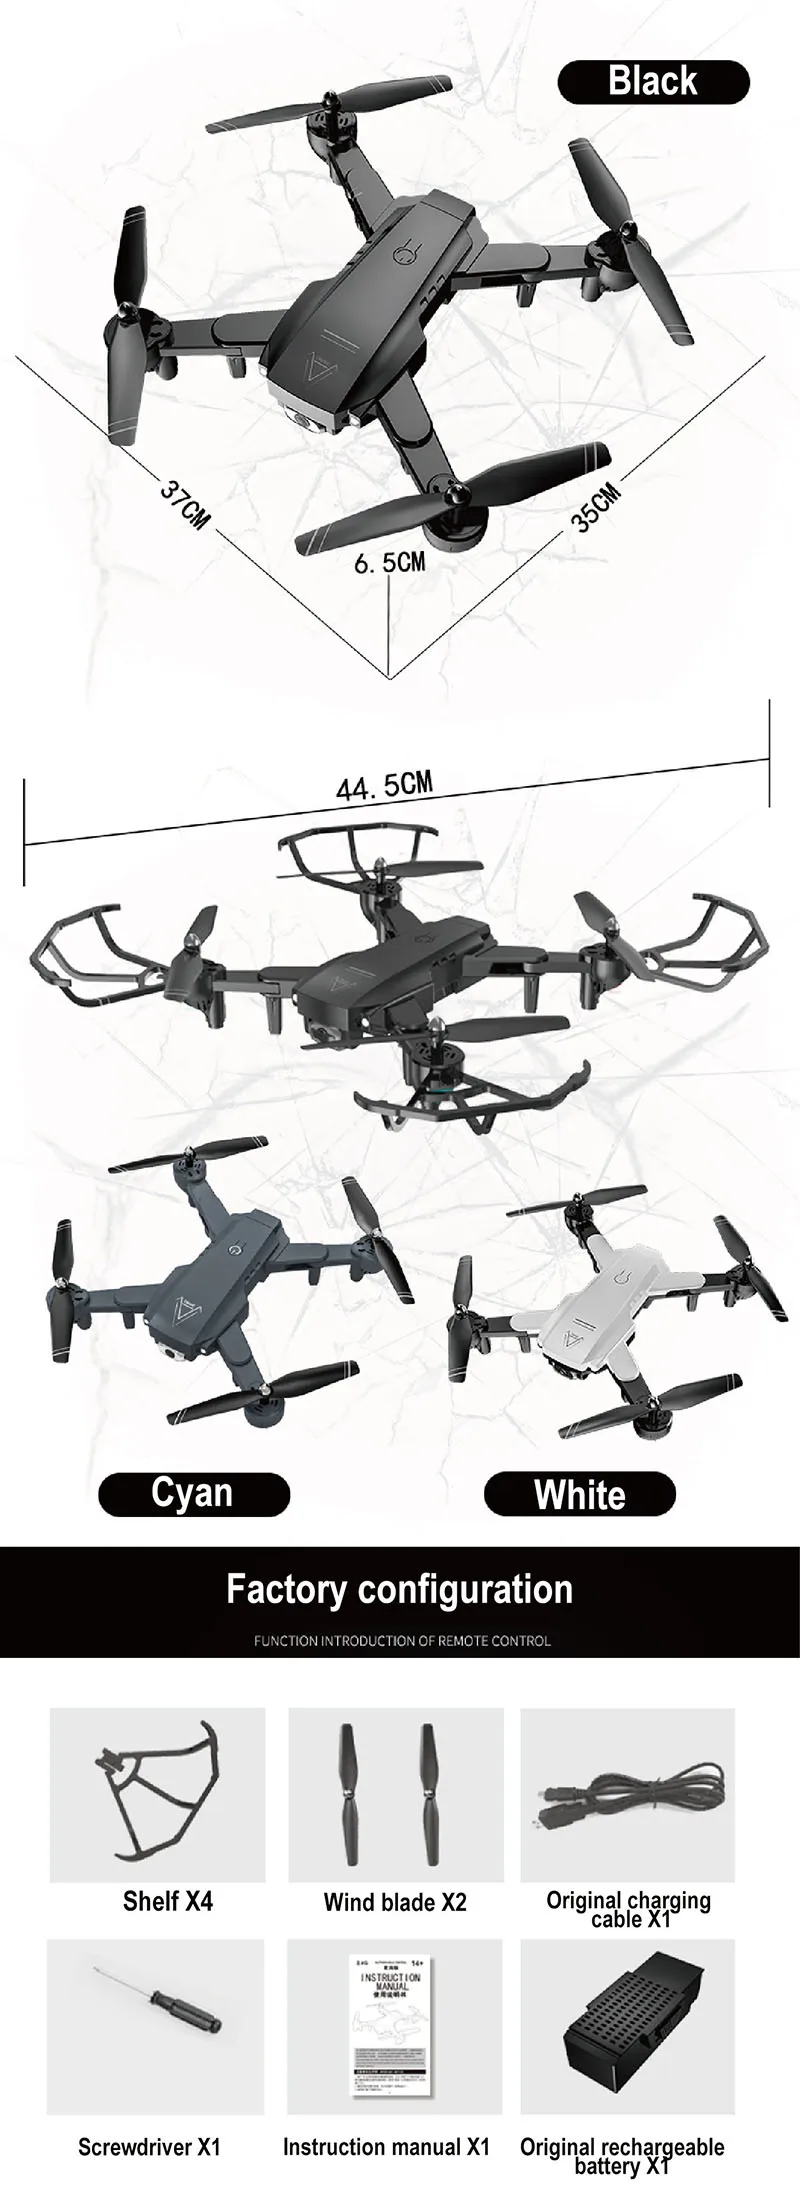 1080P RC беспилотные вертолеты с камерой 720P gps 2,4G оптическое положение потока rc Квадрокоптер полёт 22 минуты rc игрушки дроны антенна